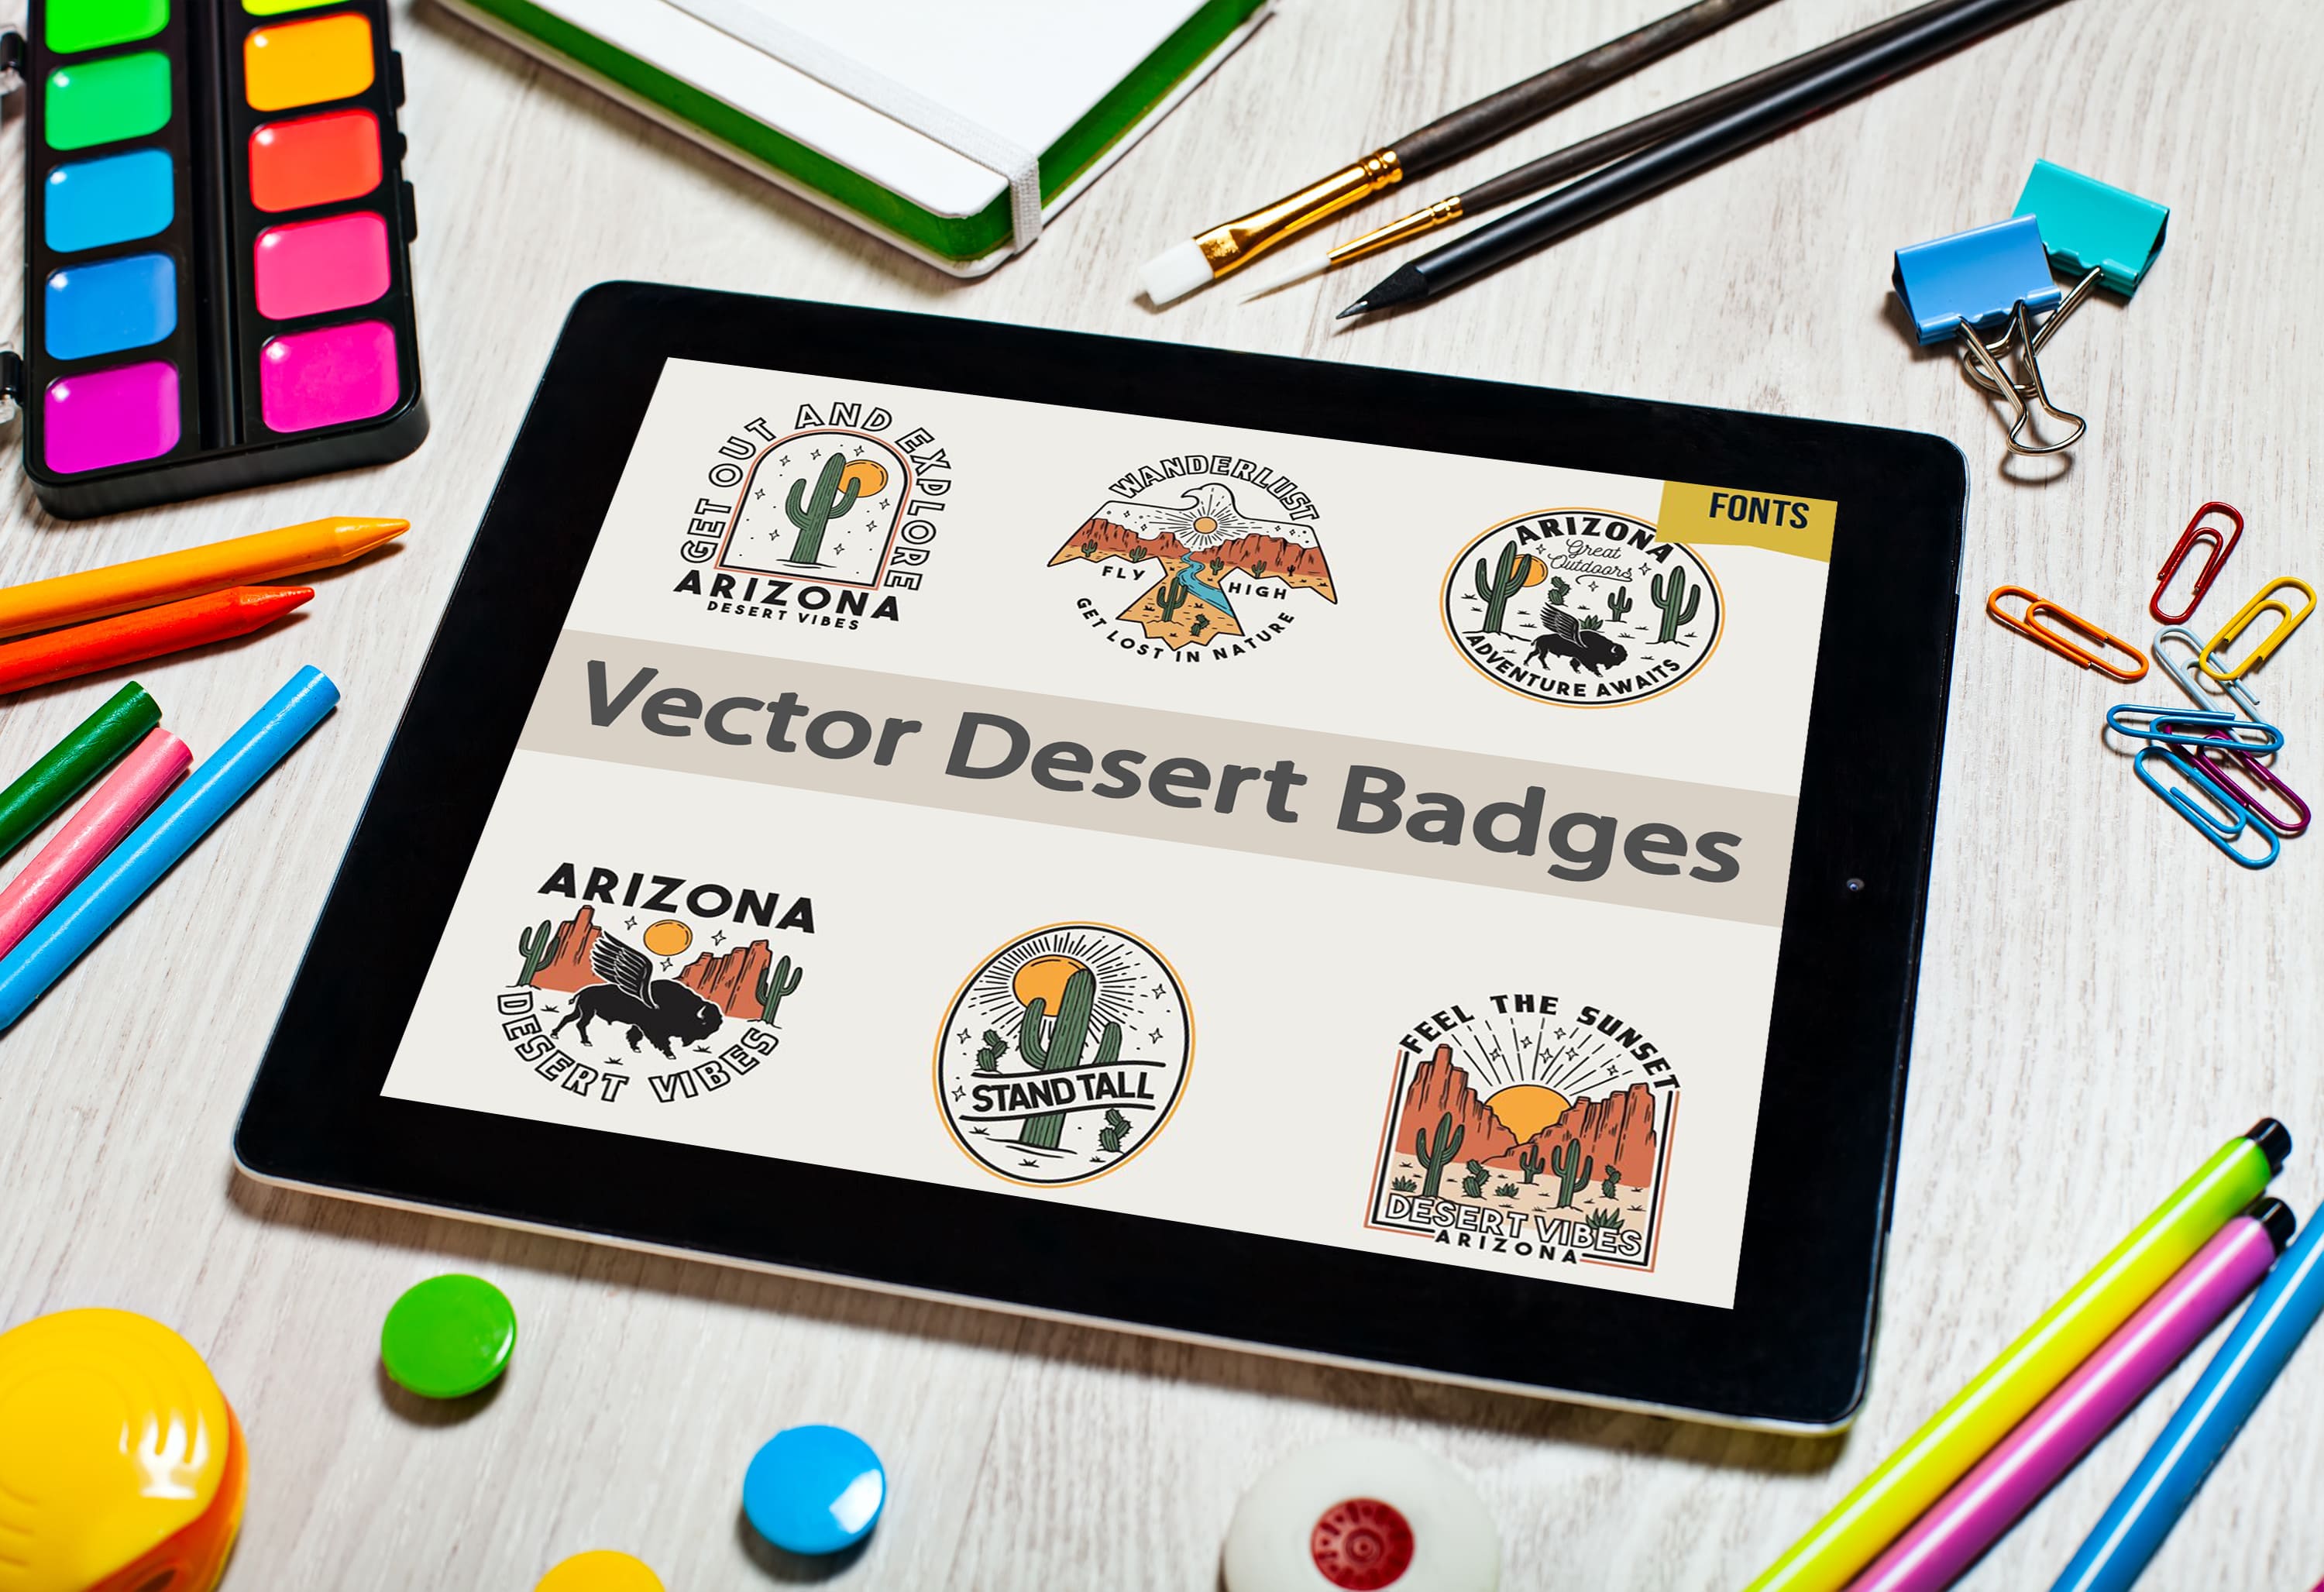 Tablet option of the Vector Desert Badges.